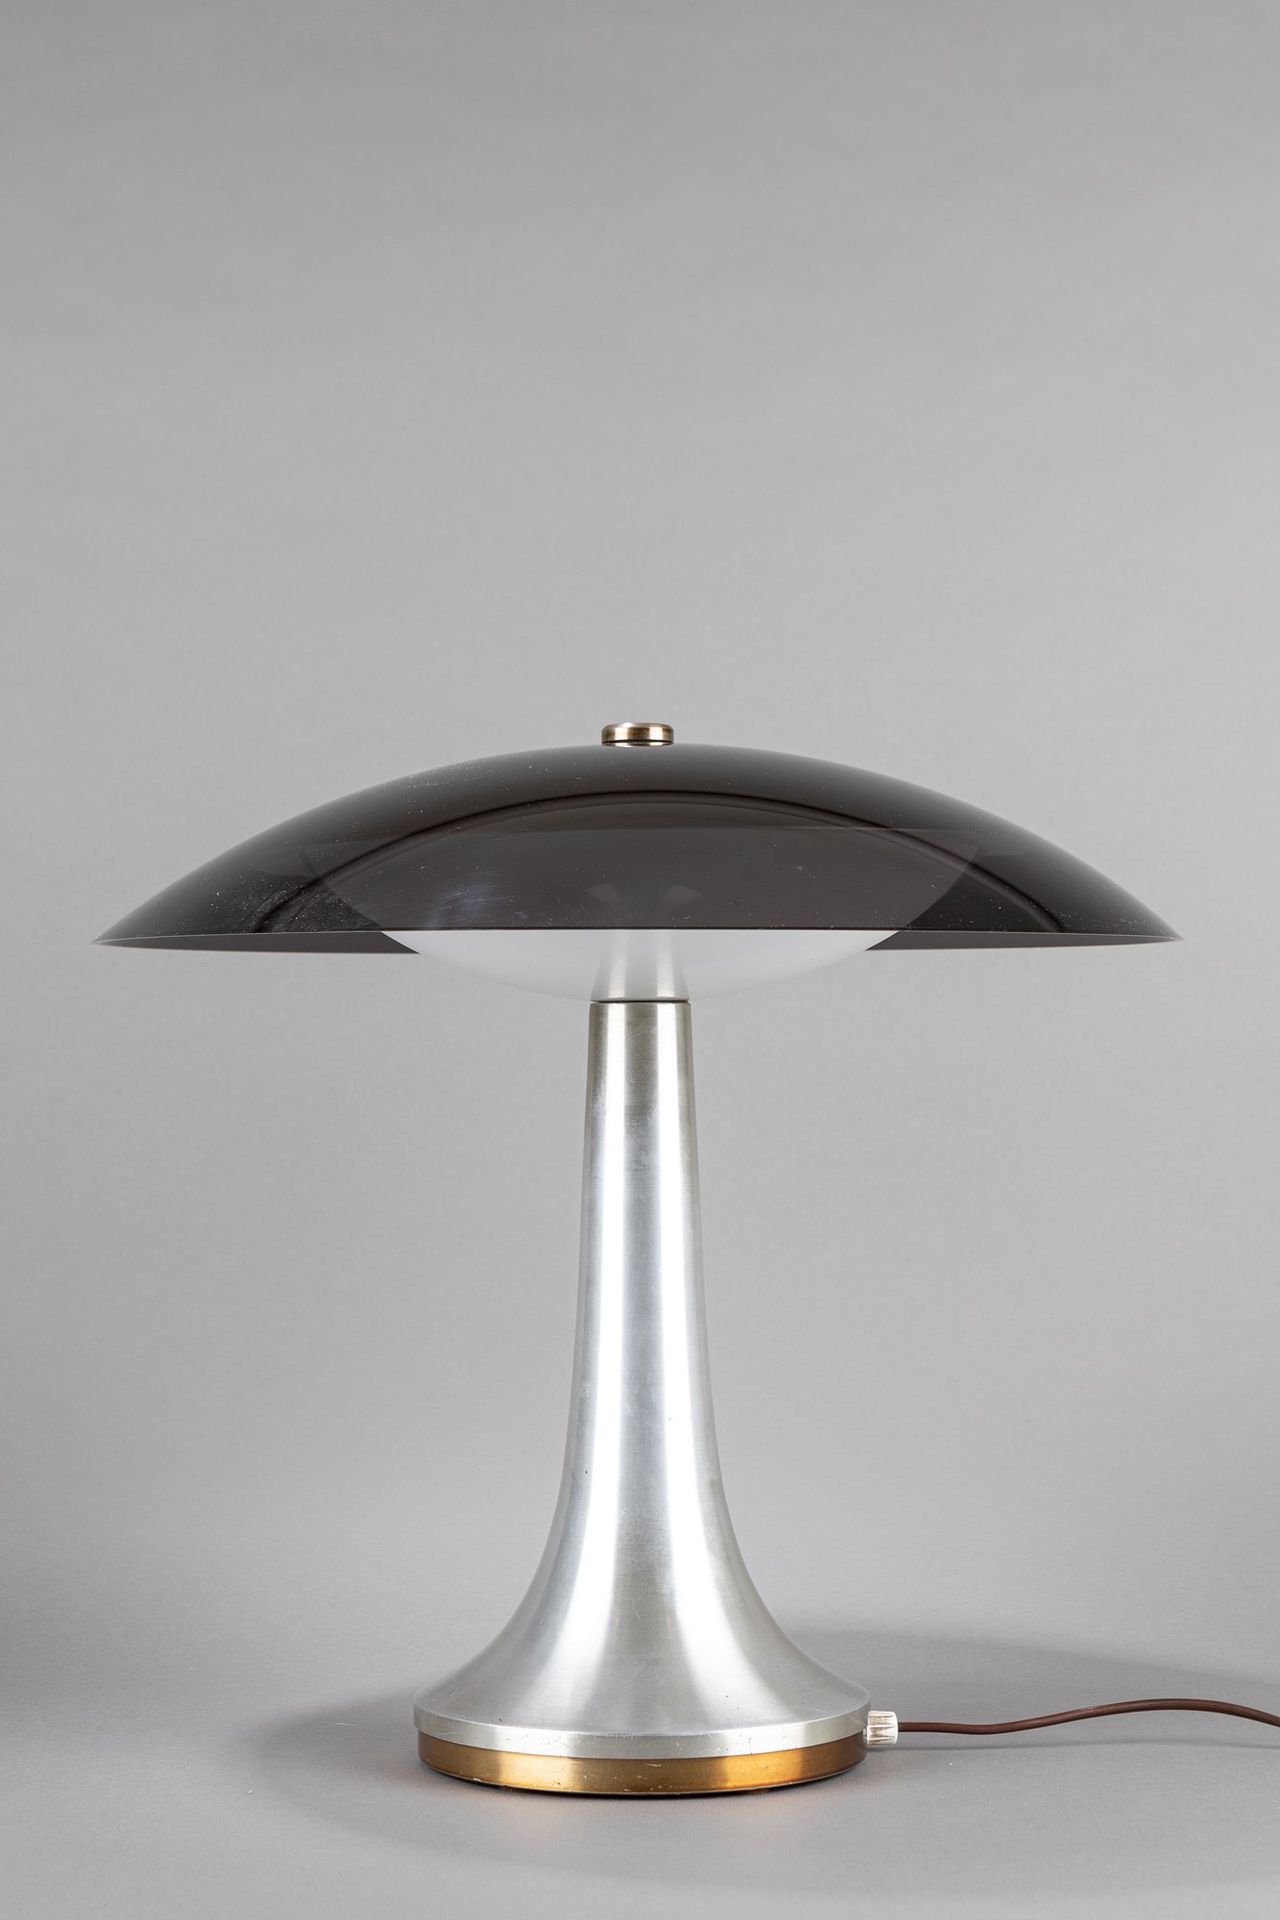 Stilux Table lamp, 1960 ca.

H 45 cm
brushed nickeled brass, alumium, perspex.